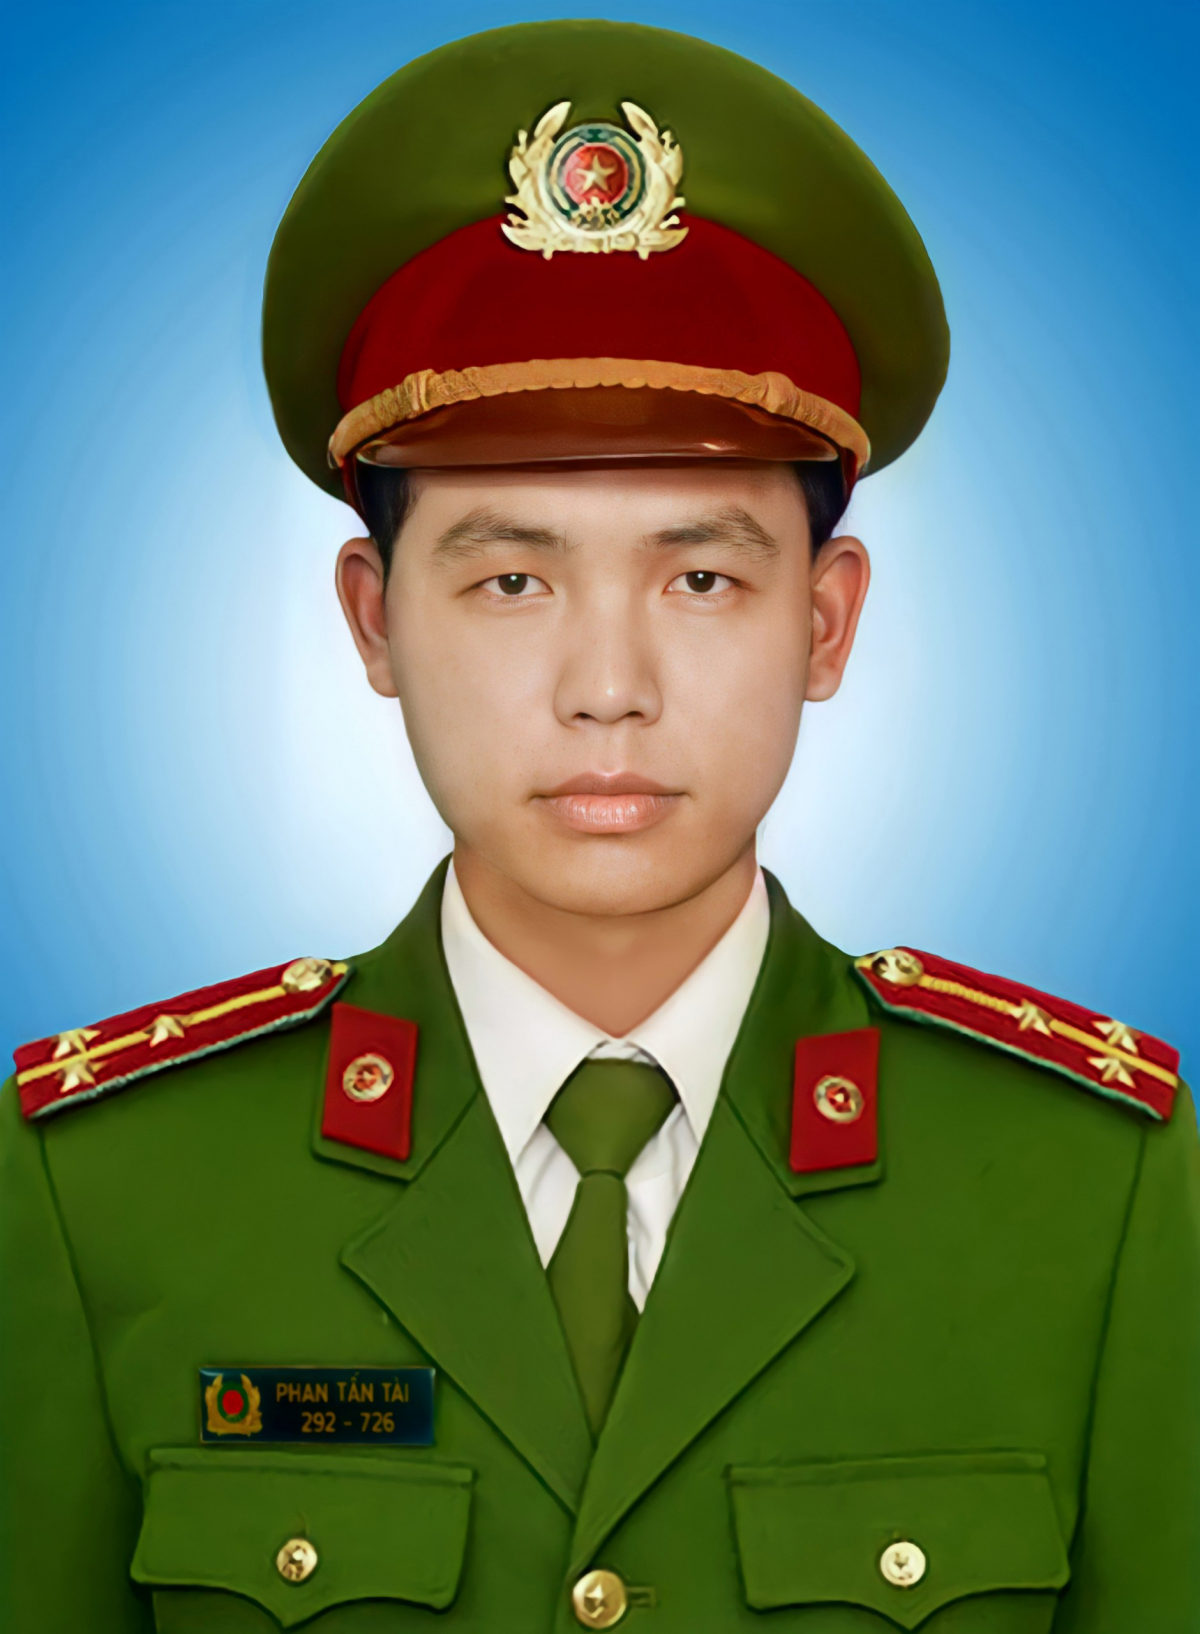 Chiến sỹ công an Phan Tấn Tài